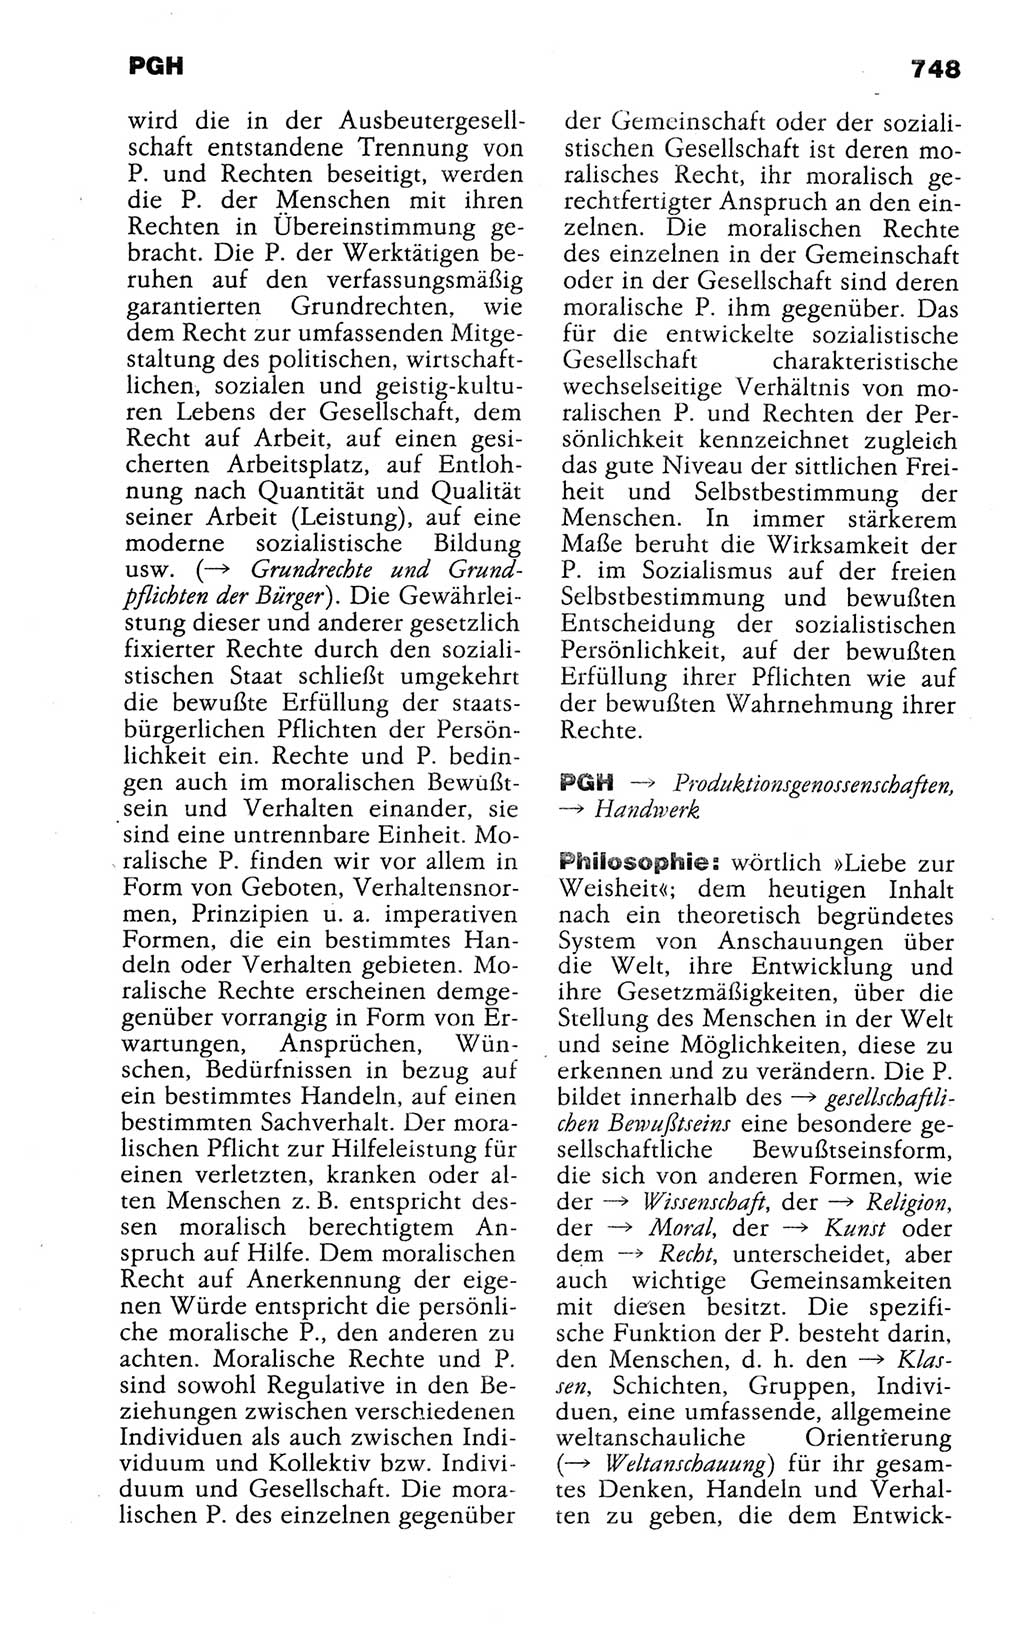 Kleines politisches Wörterbuch [Deutsche Demokratische Republik (DDR)] 1988, Seite 748 (Kl. pol. Wb. DDR 1988, S. 748)